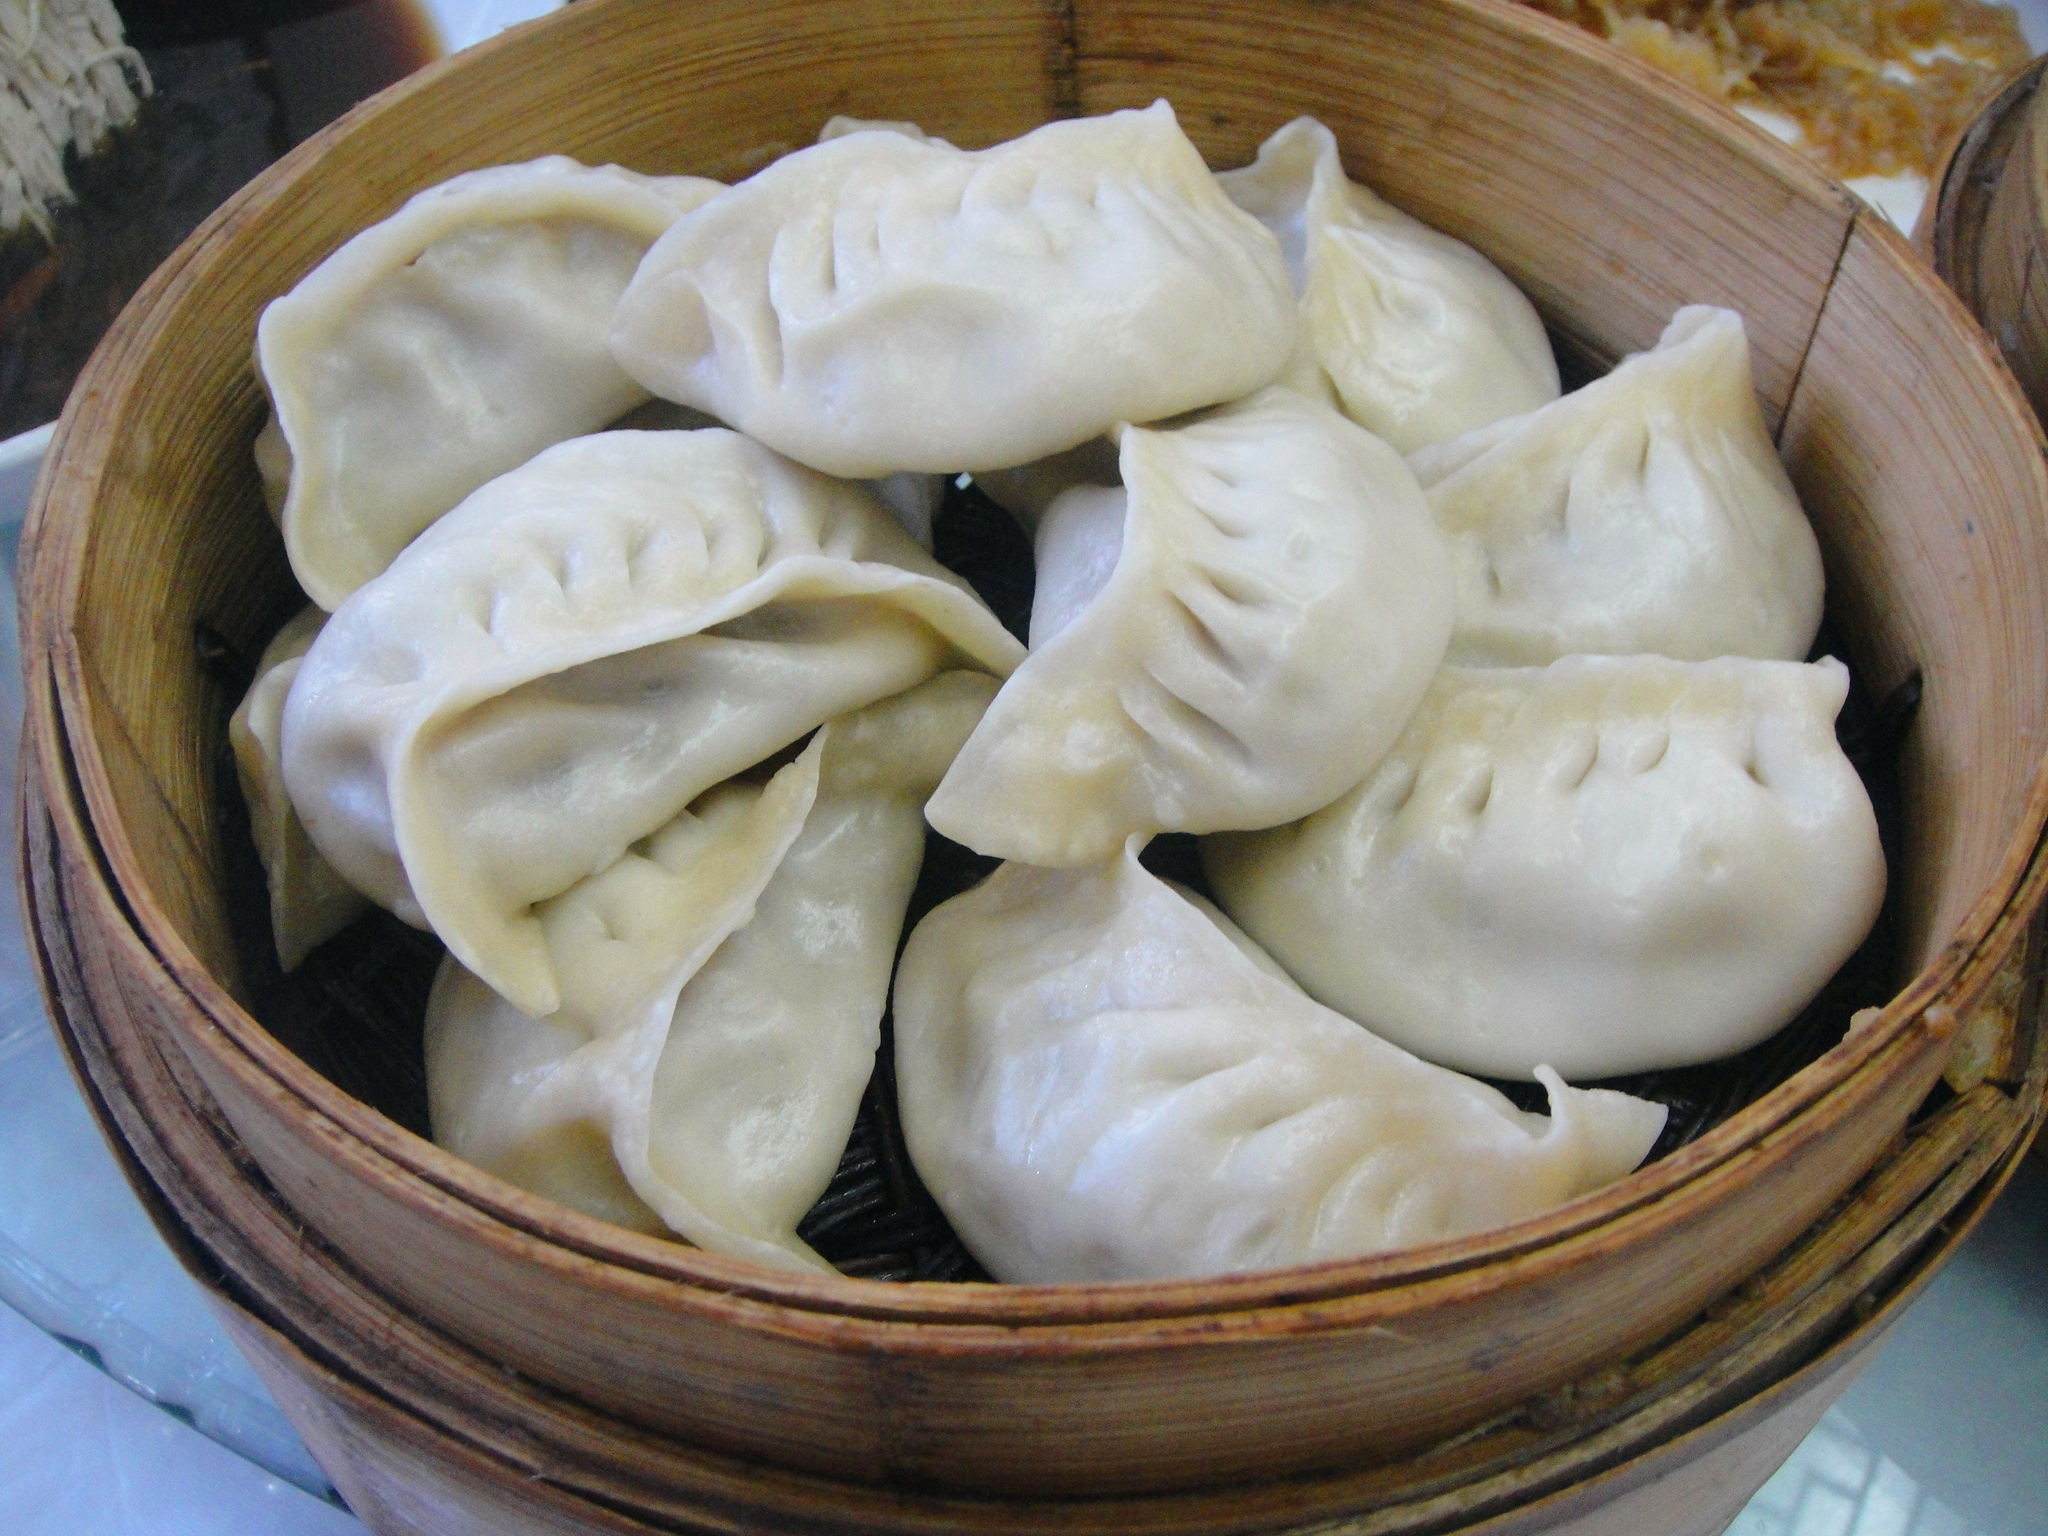 扬州著名美食图片